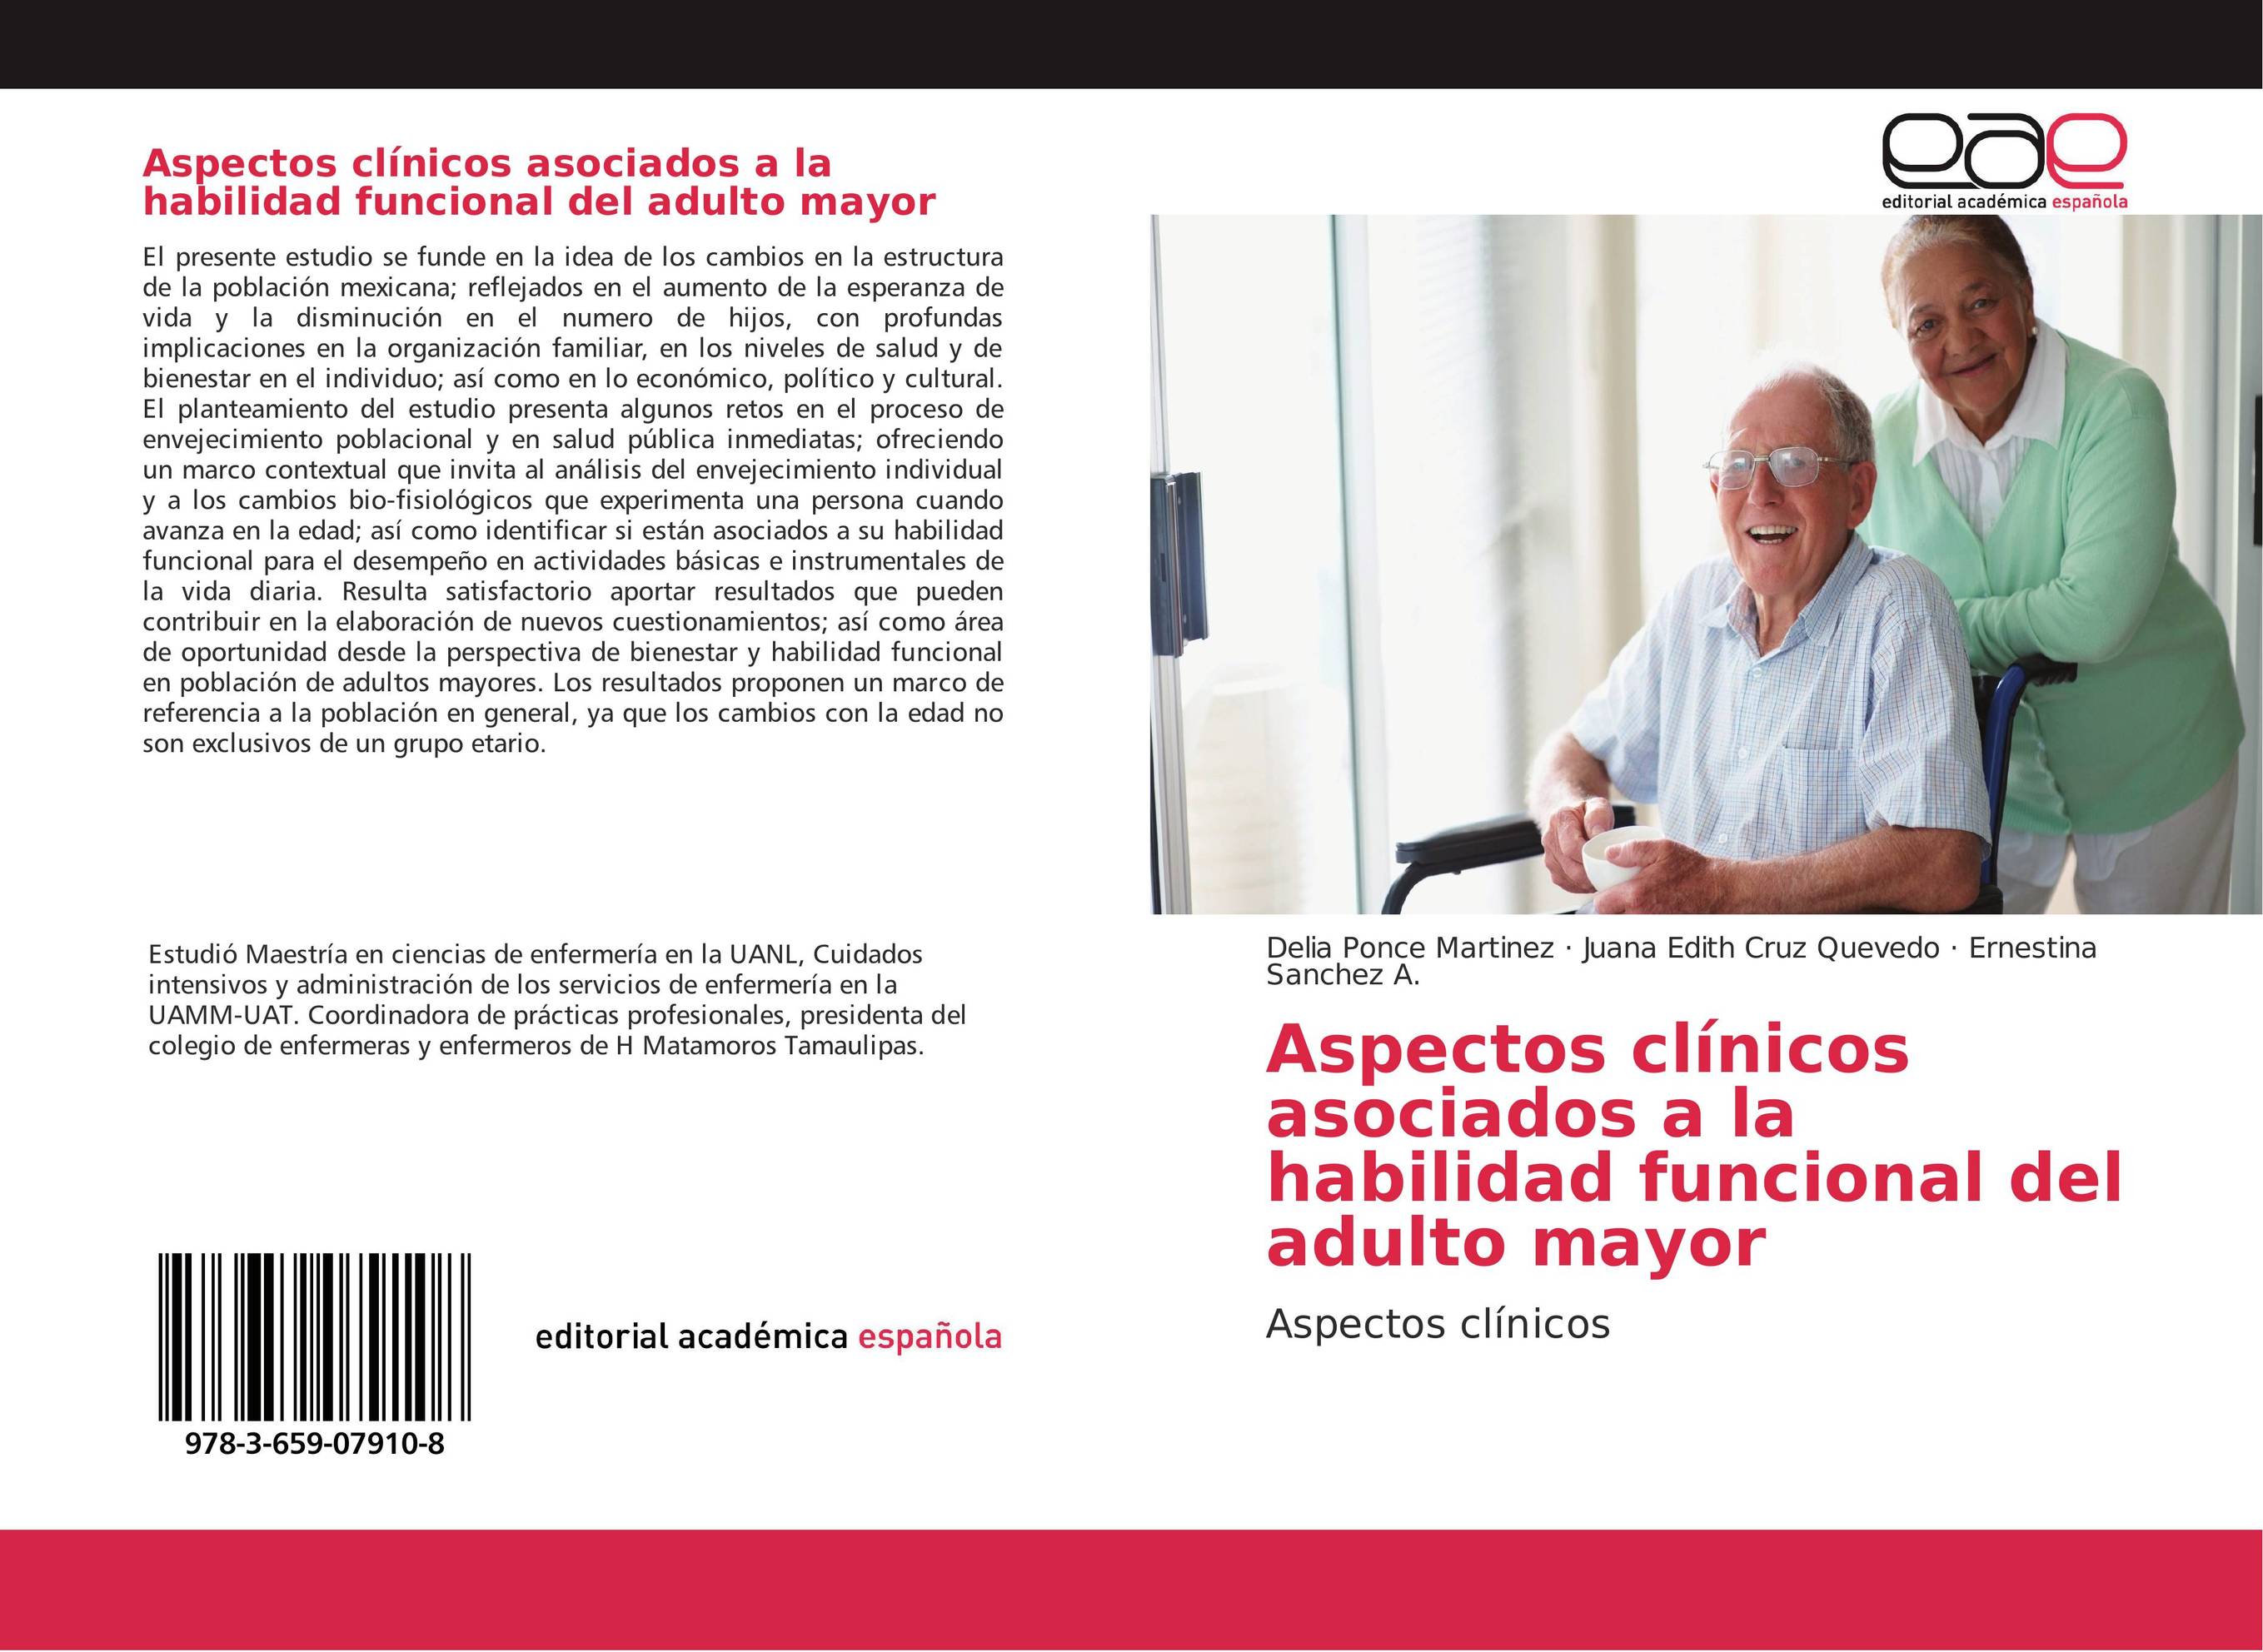 Aspectos clínicos asociados a la habilidad funcional del adulto mayor